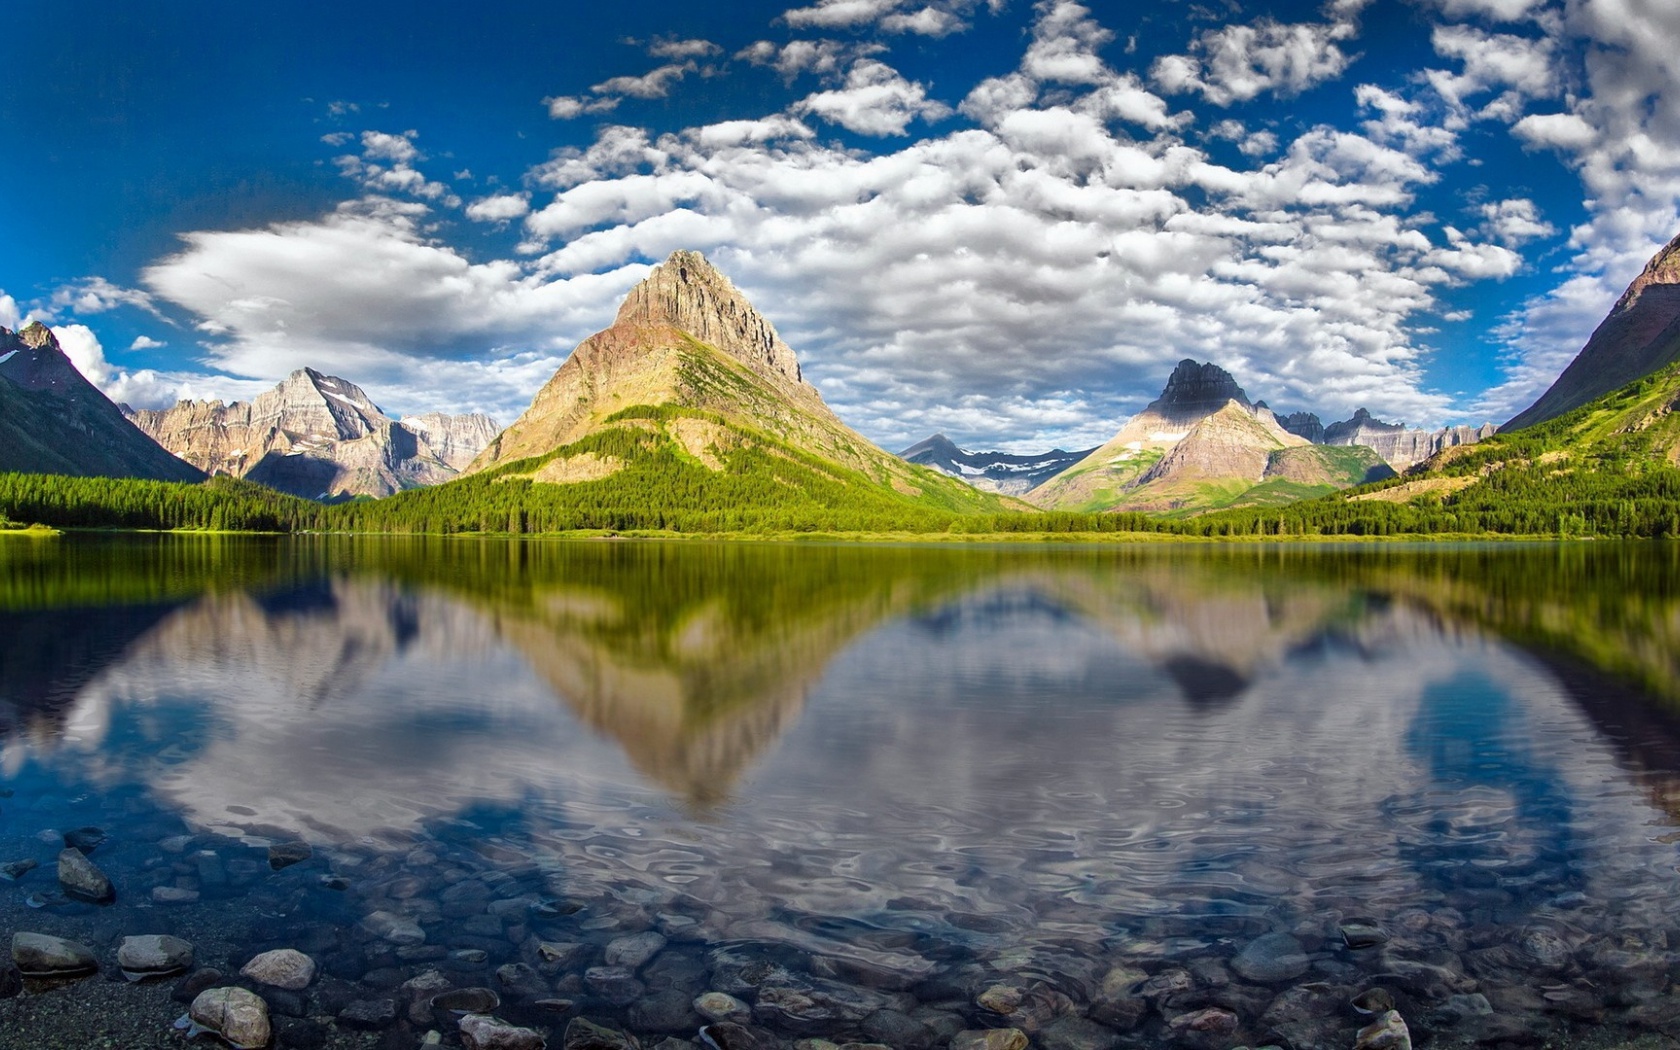 pc desktop wallpaper,natural landscape,reflection,nature,mountain,mountainous landforms